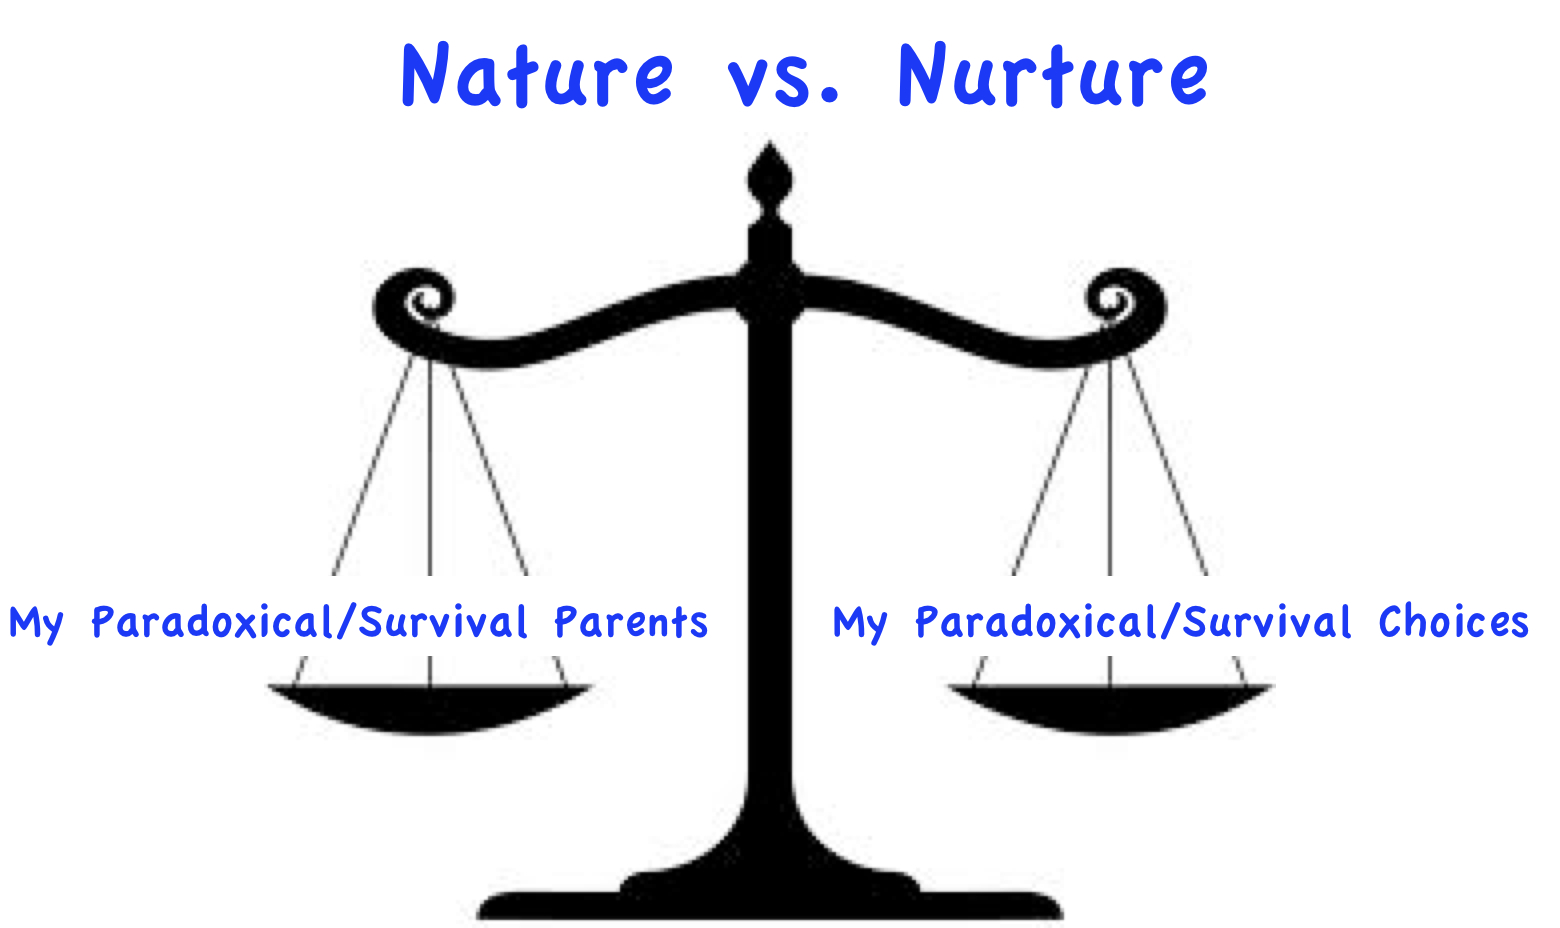 Nature verses nurture